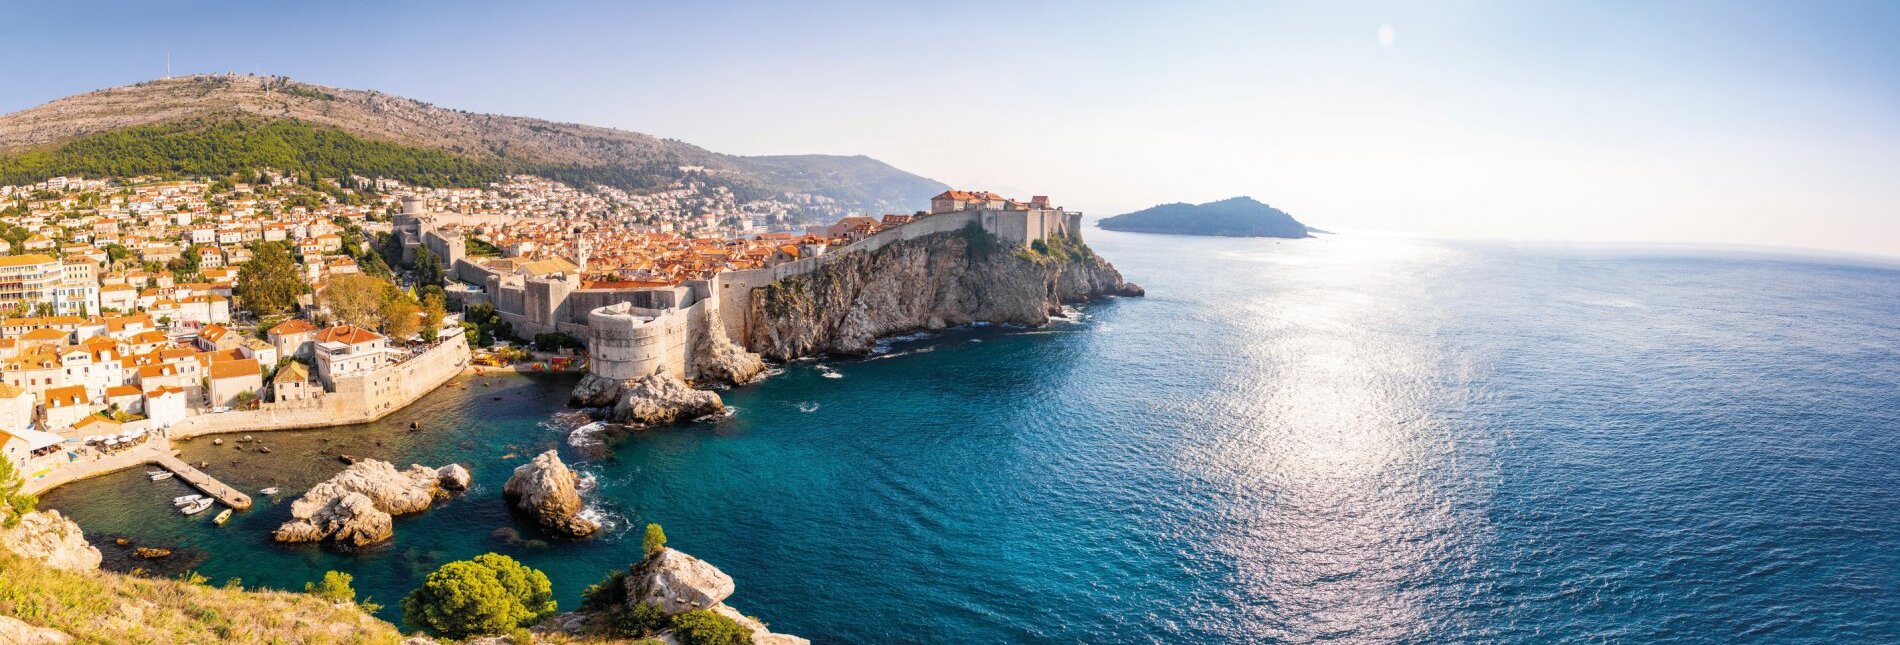 Blick von der Festung Lovrijenac auf die Altstadt von Dubrovnik